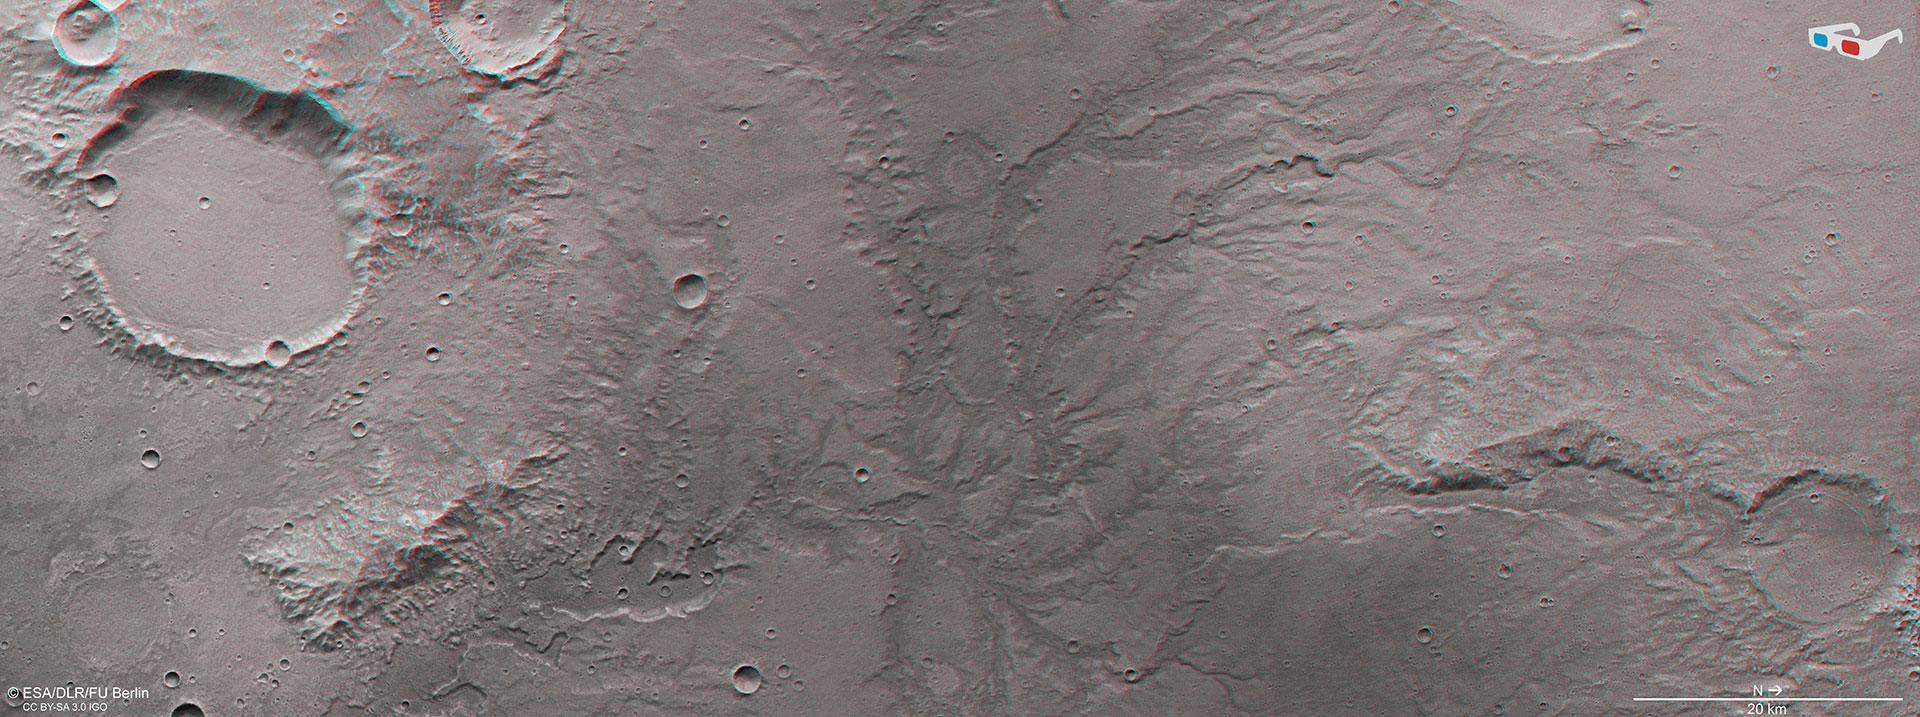 3D-Ansicht eines Talnetzwerks östlich des Kraters Huygens